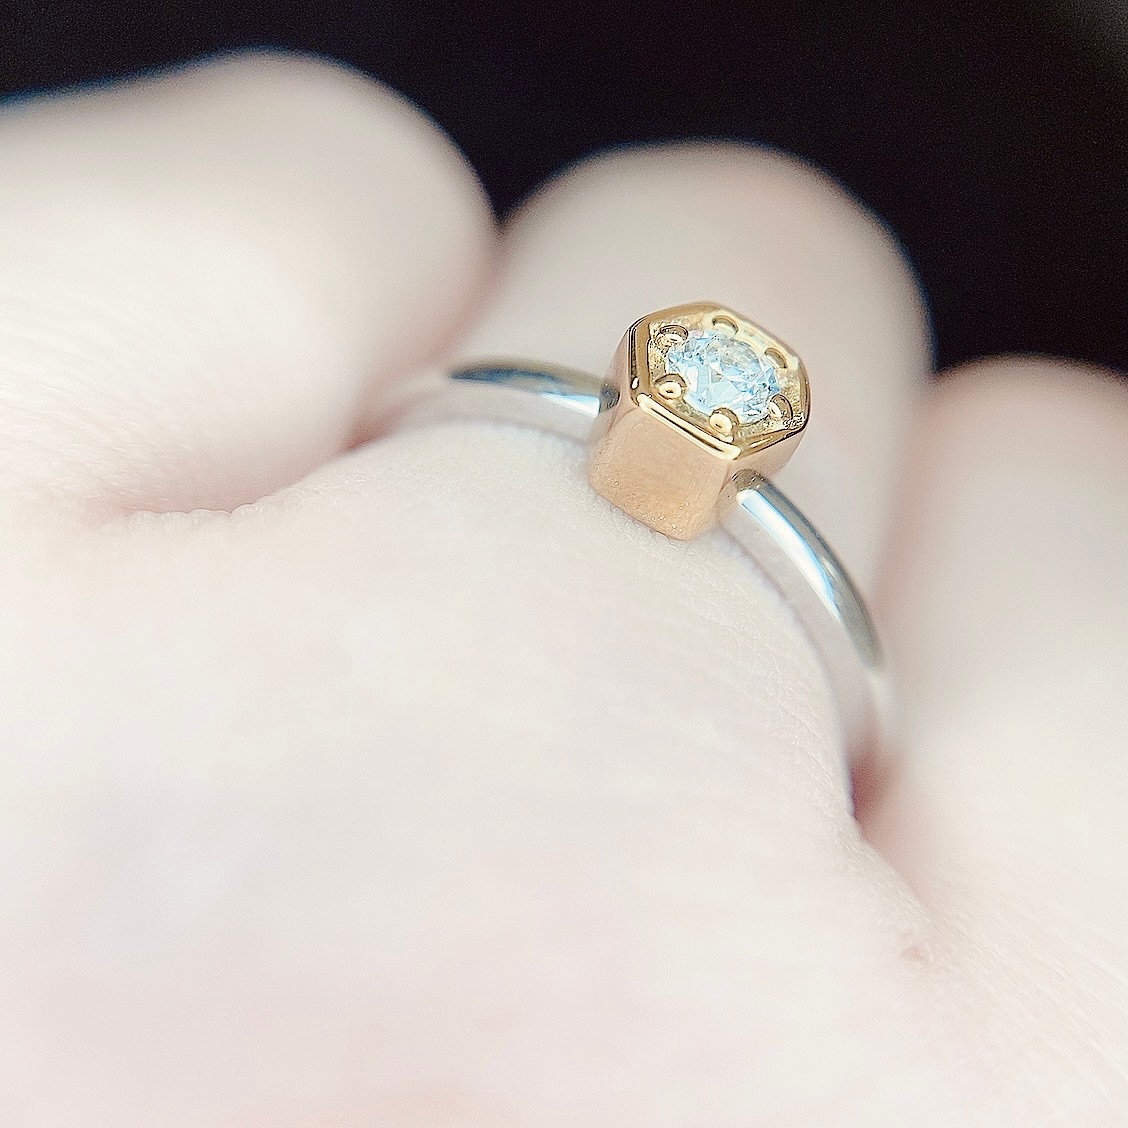 ゴールドの台座で重厚感を出したデザイン性の高い婚約指輪。